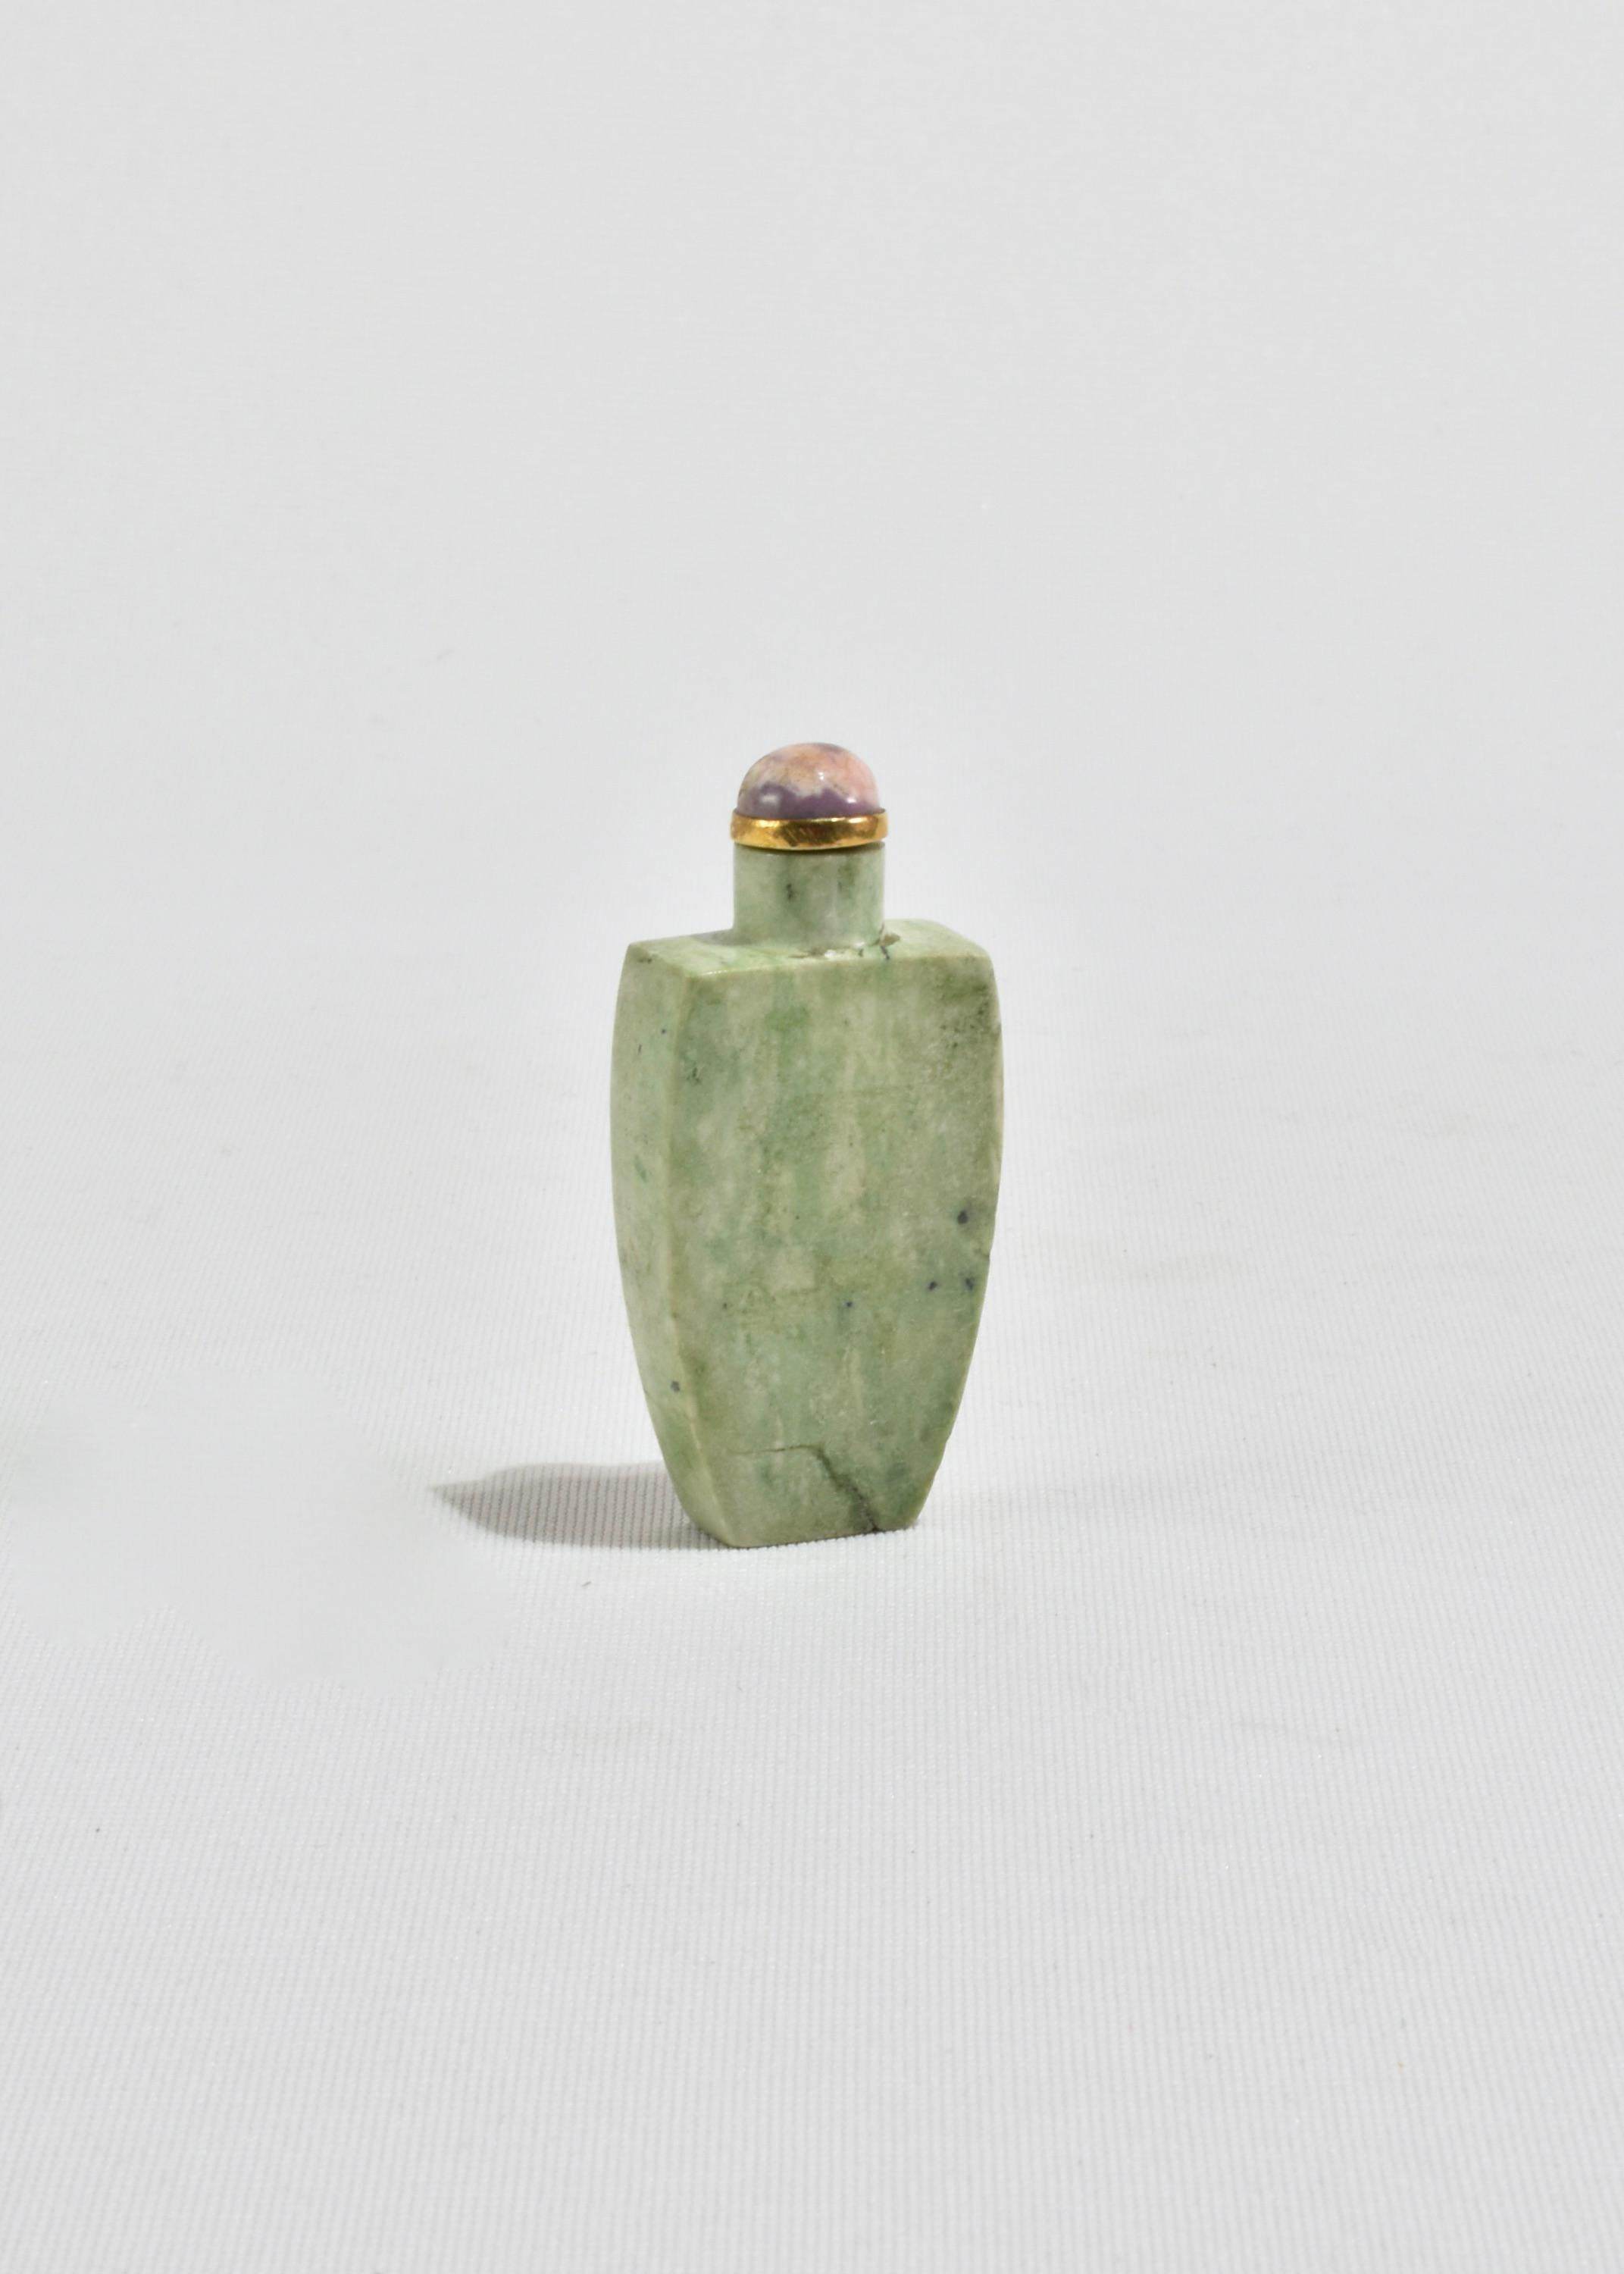 Vintage By, flacon de tabac à priser chinois sculpté à la main dans une belle pierre verte avec des détails en laiton et un sommet violet. Exposez-le seul en tant que pièce décorative ou remplissez-le de votre parfum favori.